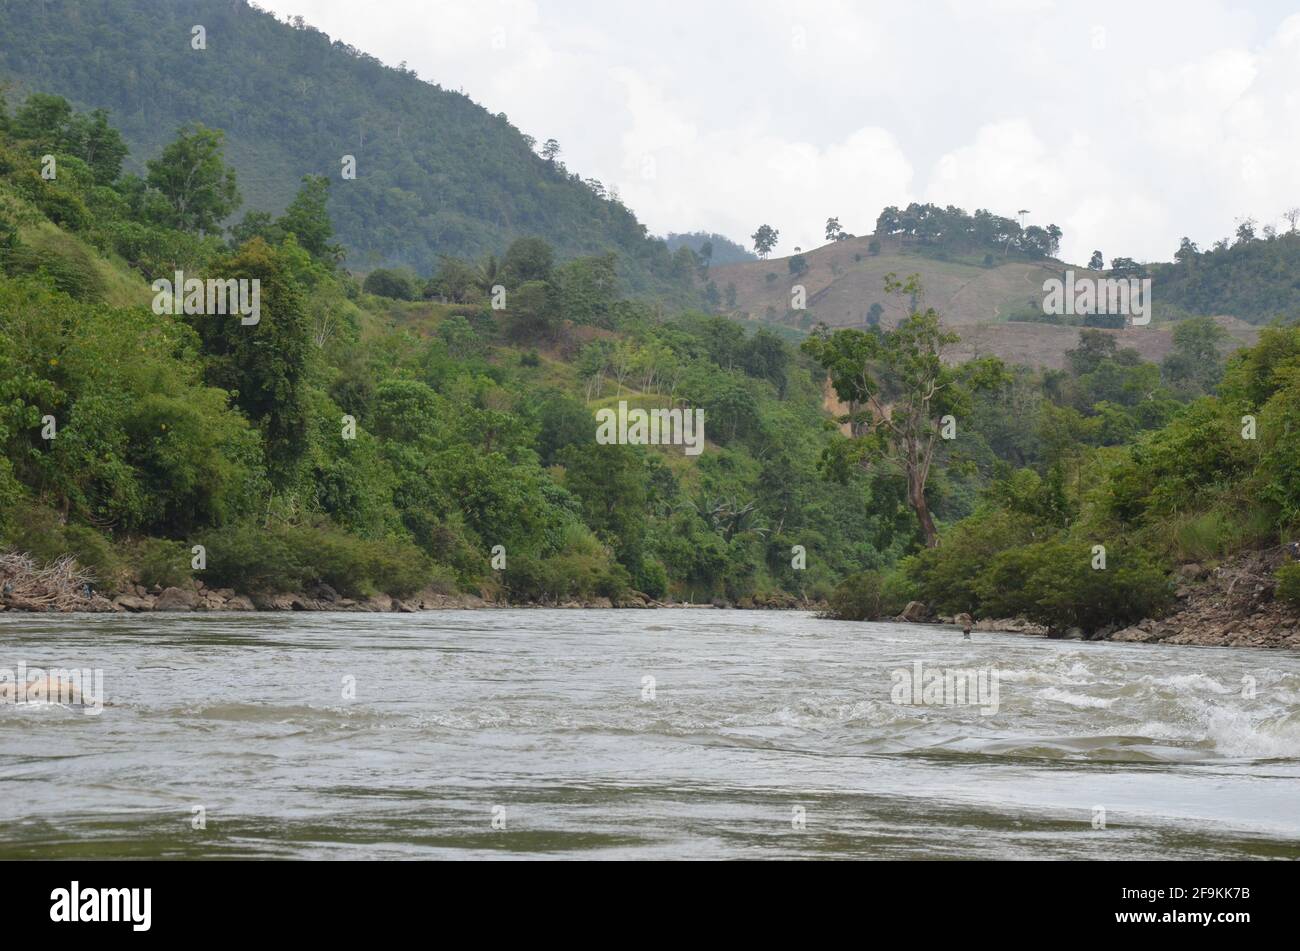 La beauté de la rivière Ales - Singkil est l'une des rivières longers d'Aceh. Banque D'Images